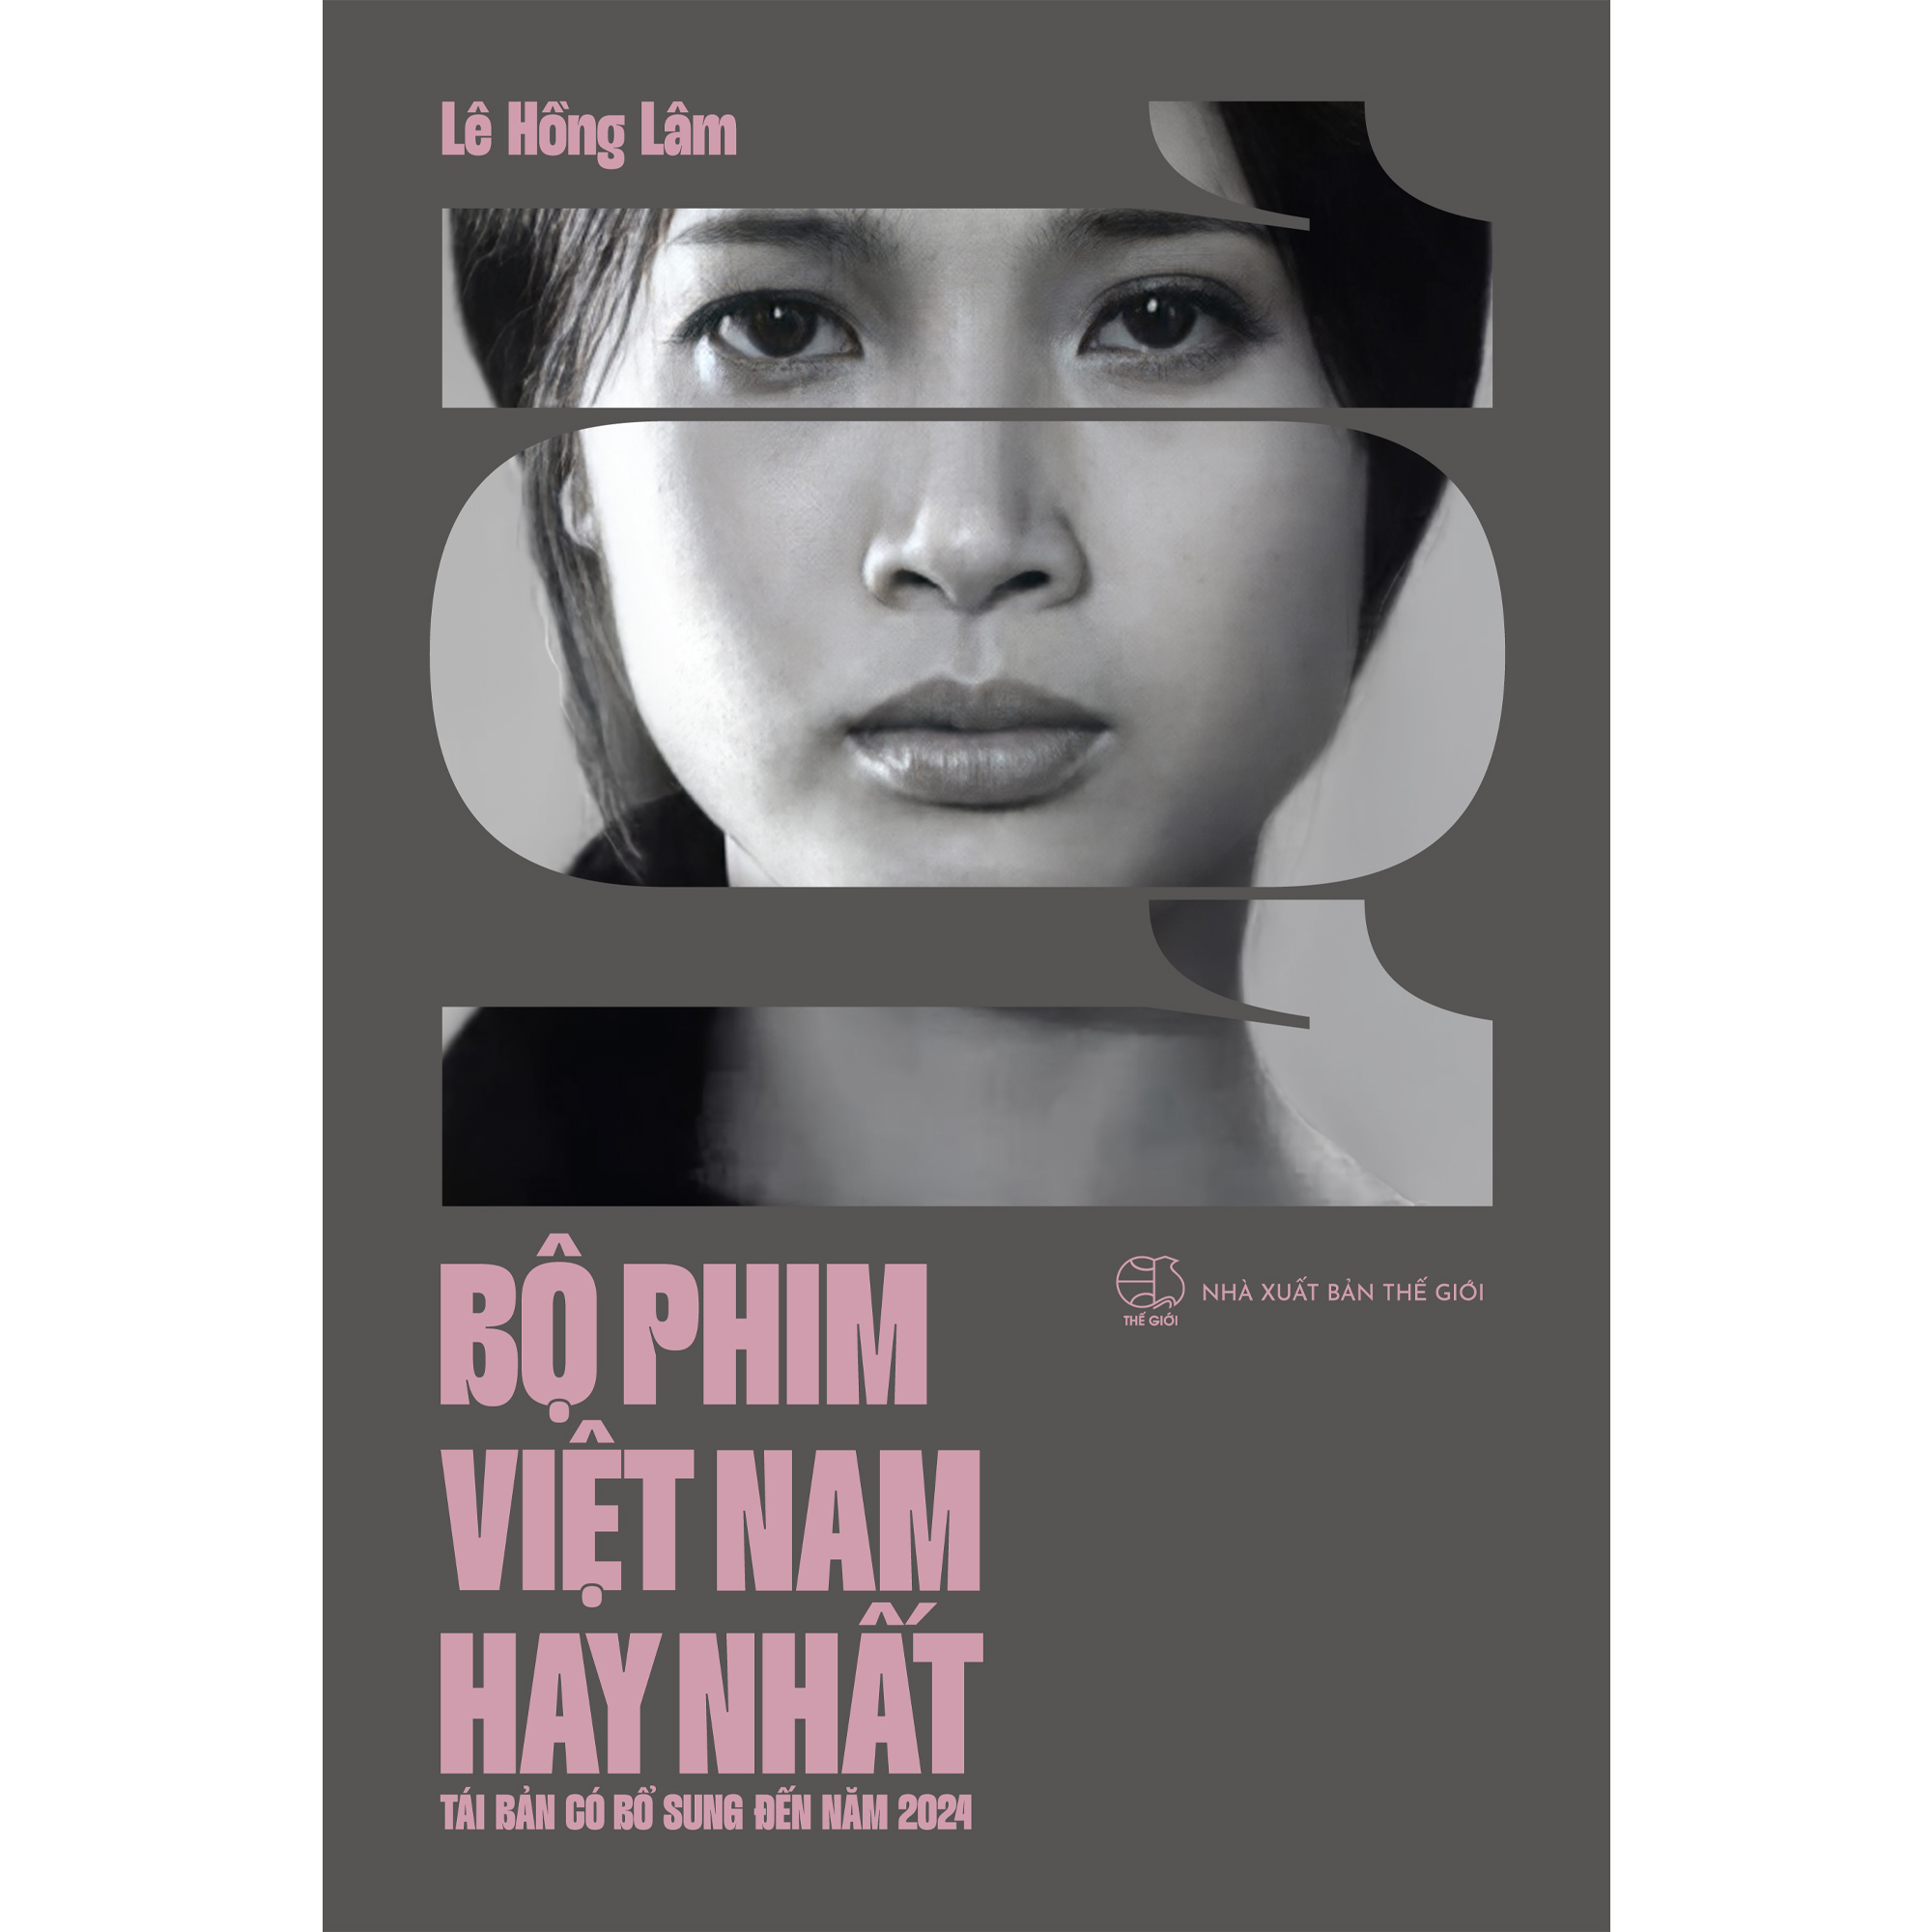 101 Bộ phim Việt Nam hay nhất (tái bản có bổ sung đến năm 2024)